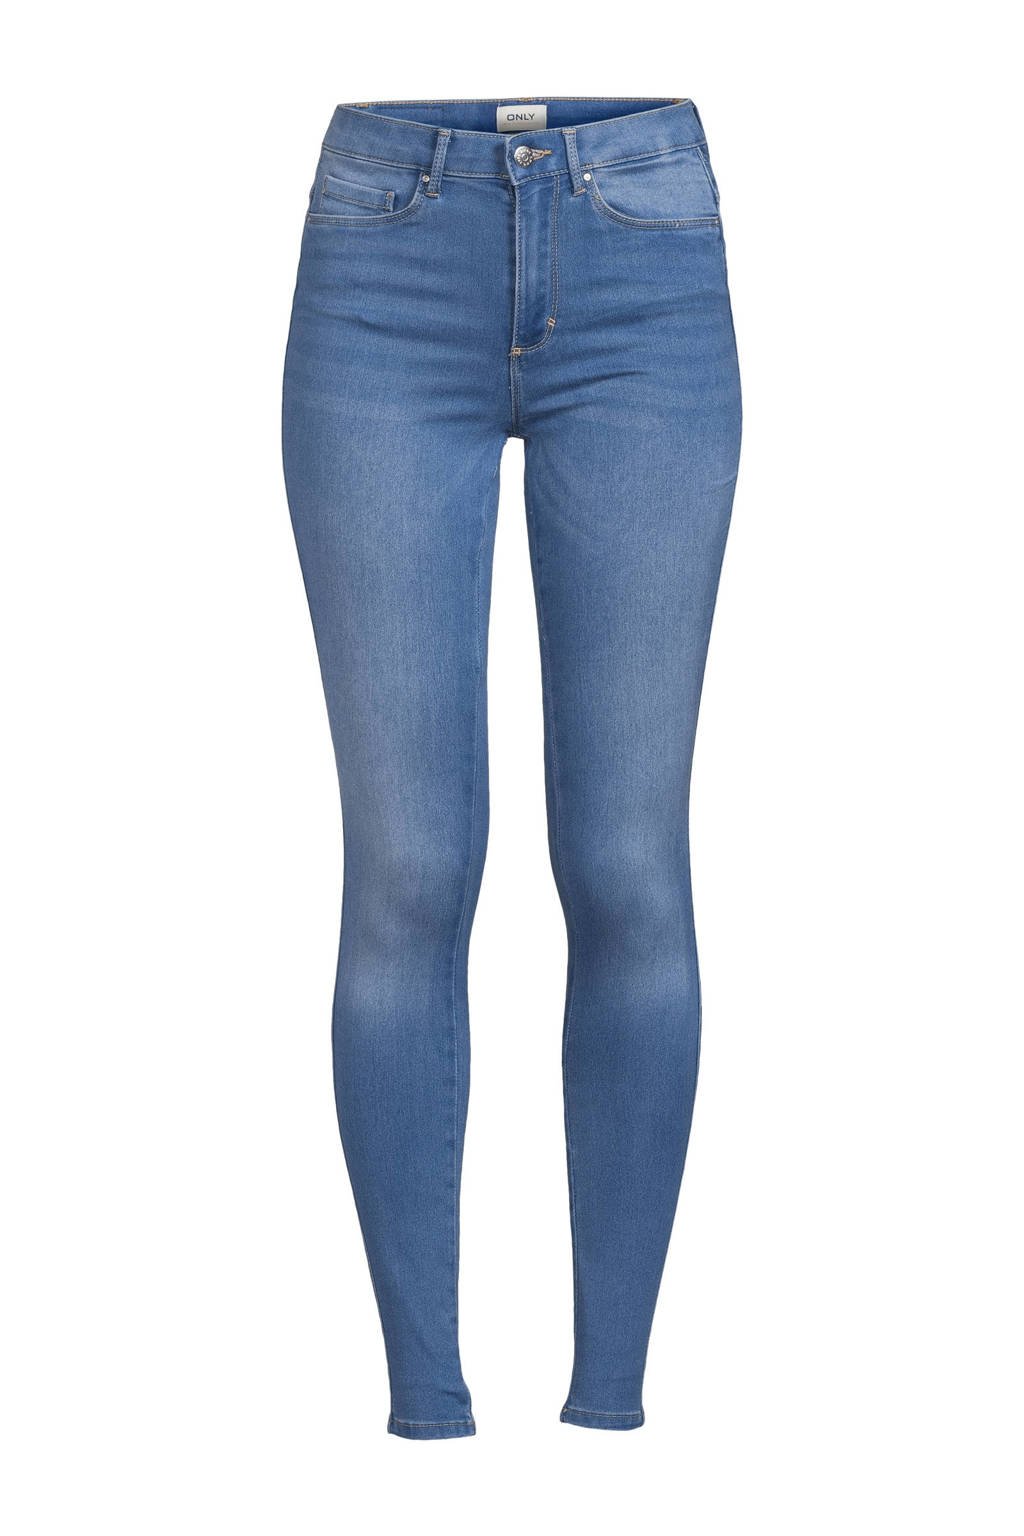 ONLY high waist skinny jeans ONLROYAL light medium blue denim regular